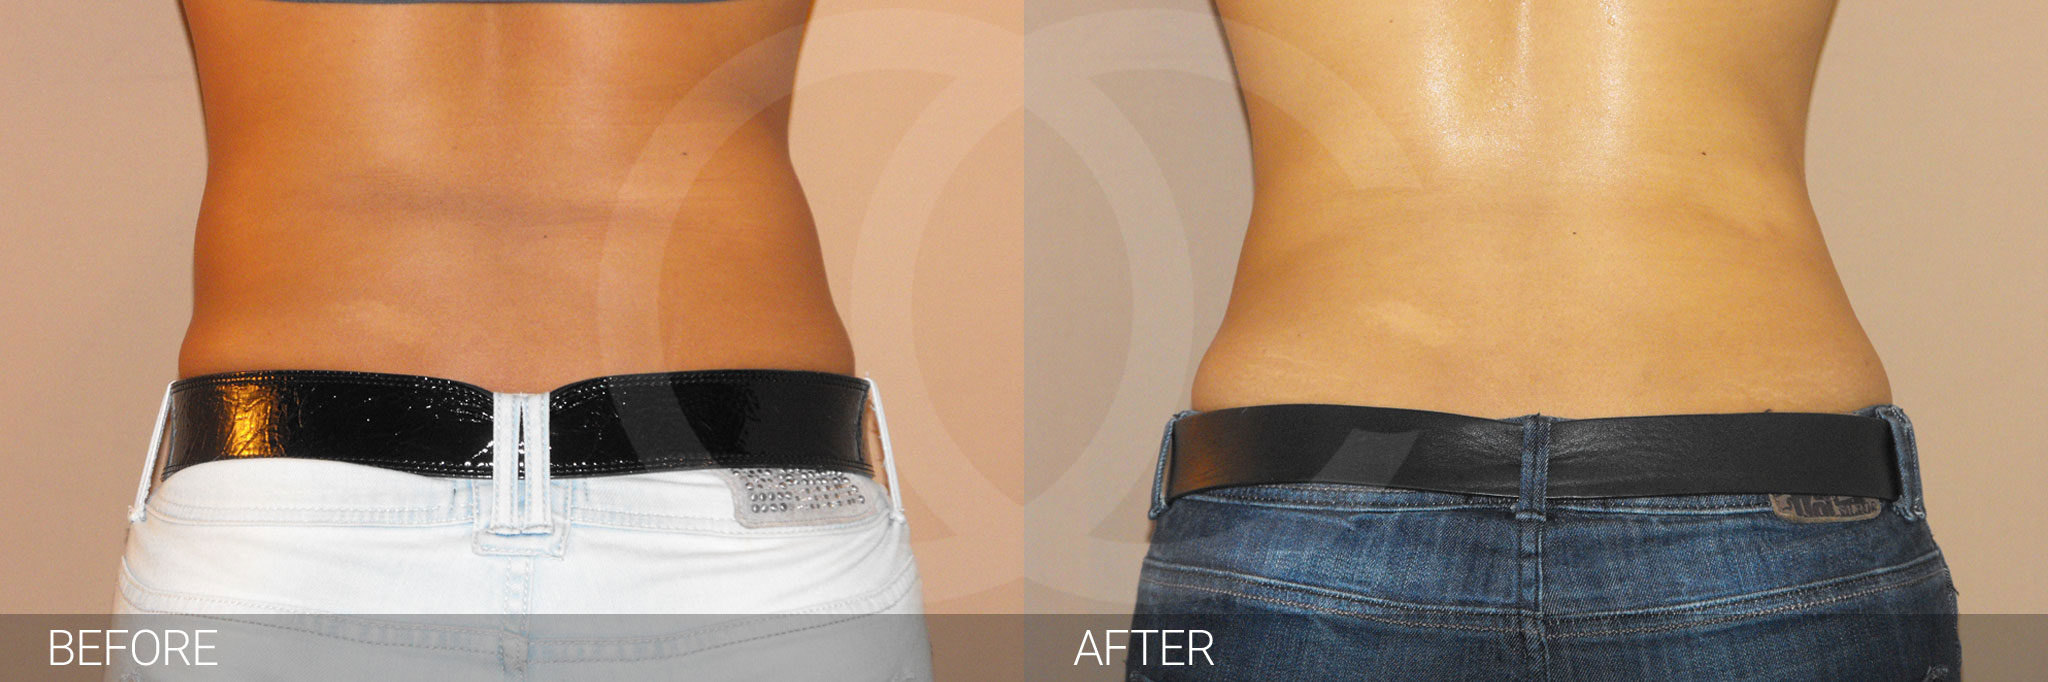 Antes y después Fotos de eliminar grasa abdominal fotos reales de pacientes 2.3 | Ocean Clinic Marbella Madrid